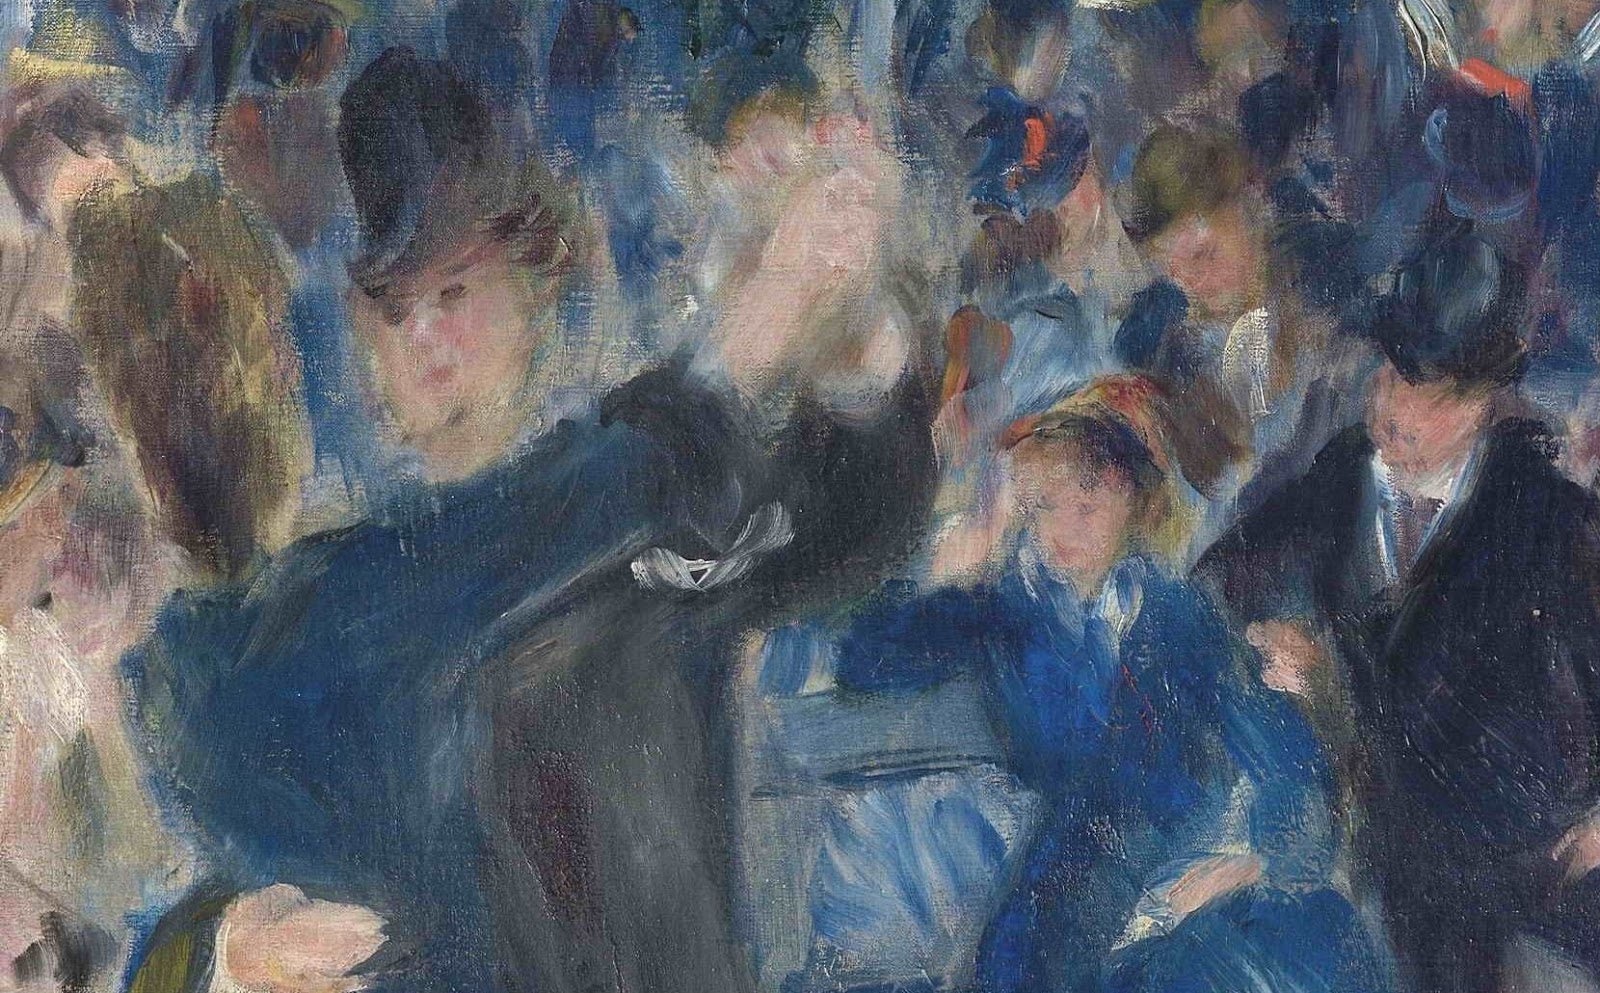 Pierre+Auguste+Renoir-1841-1-19 (430).JPG